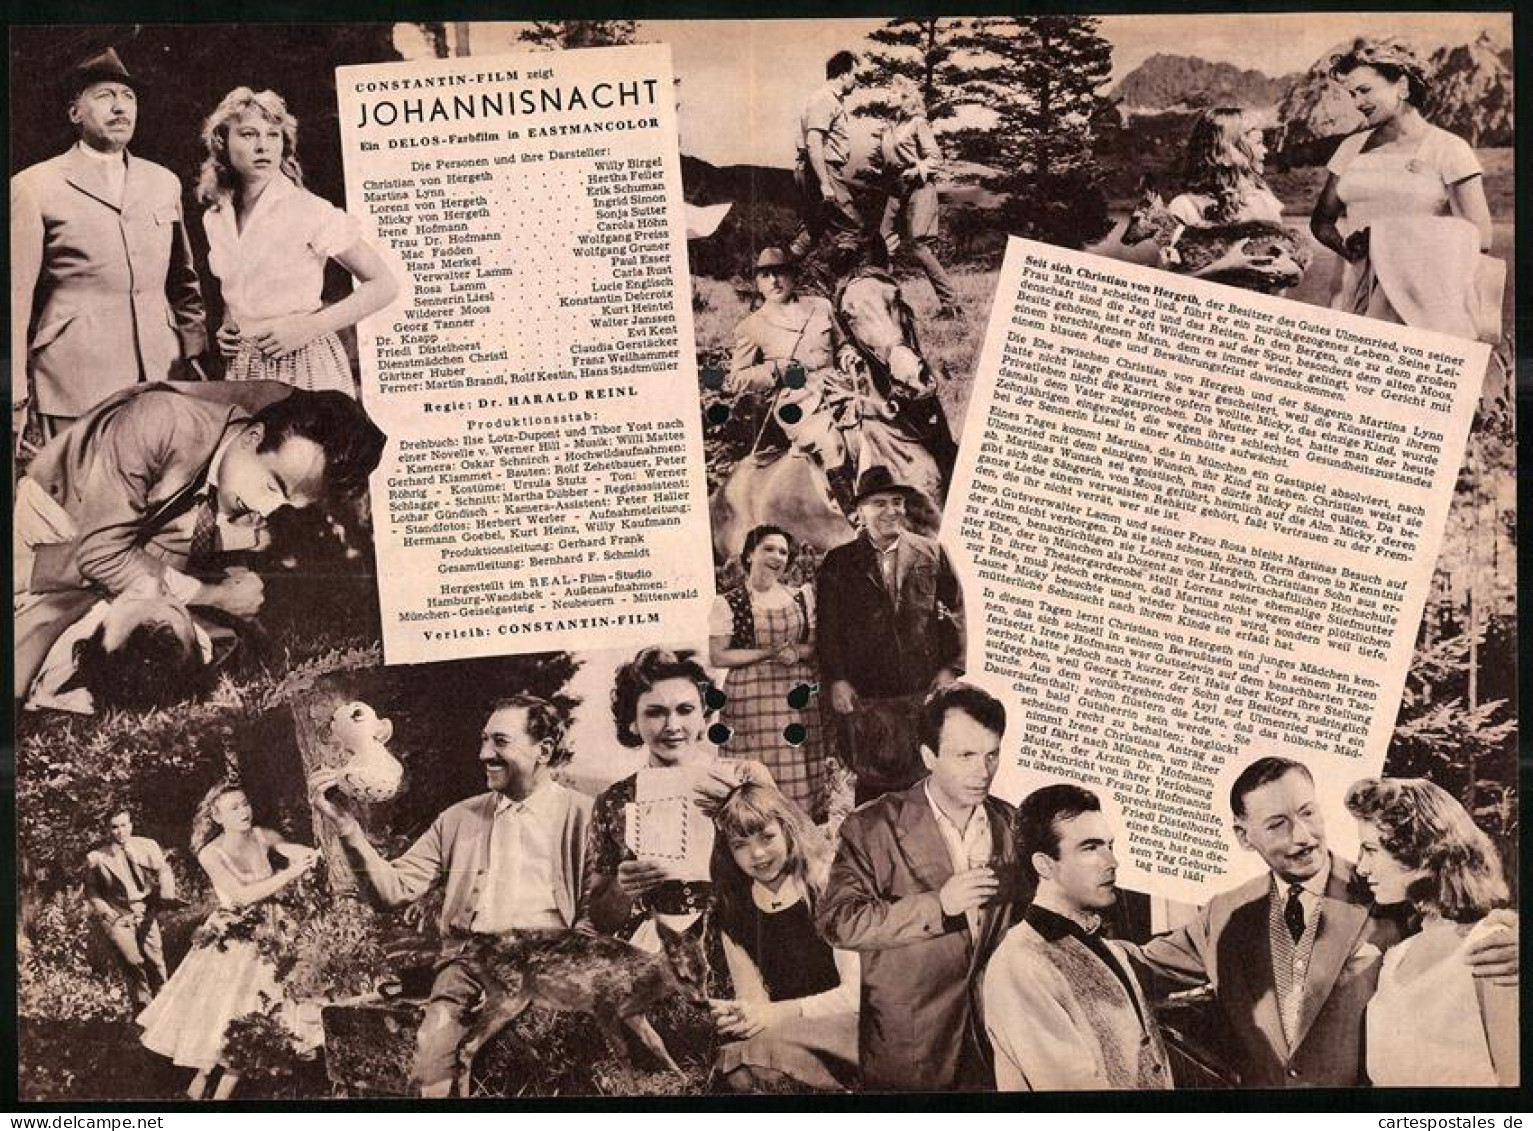 Filmprogramm DNF, Johannisnacht, Willy Birgel, Hertha Feiler, Carla Rust, Regie Dr. Harald Reinl  - Magazines